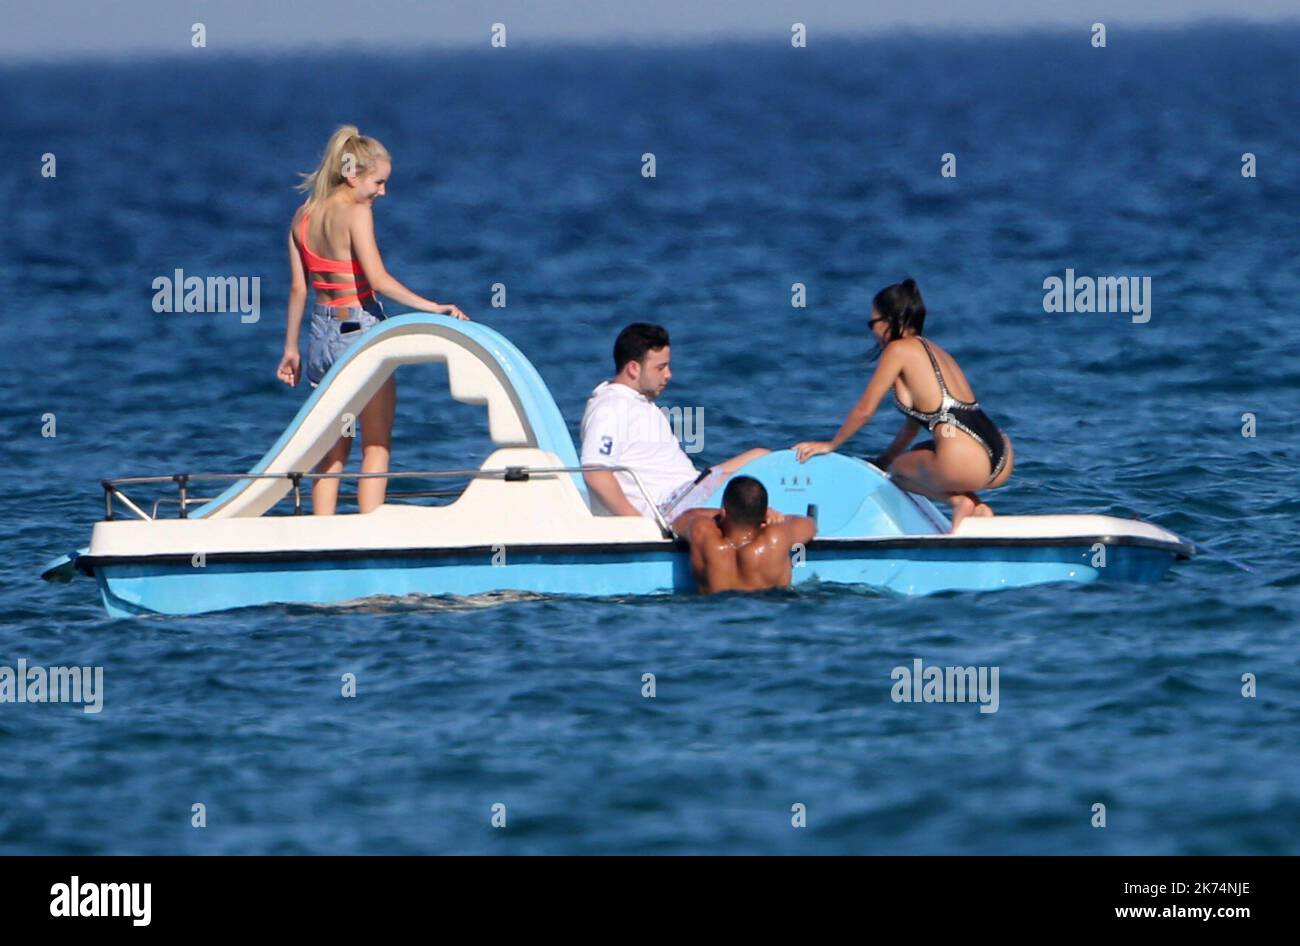 Kourtney Kardashian, her boyfriend Younes Bendjima and friends Stock Photo